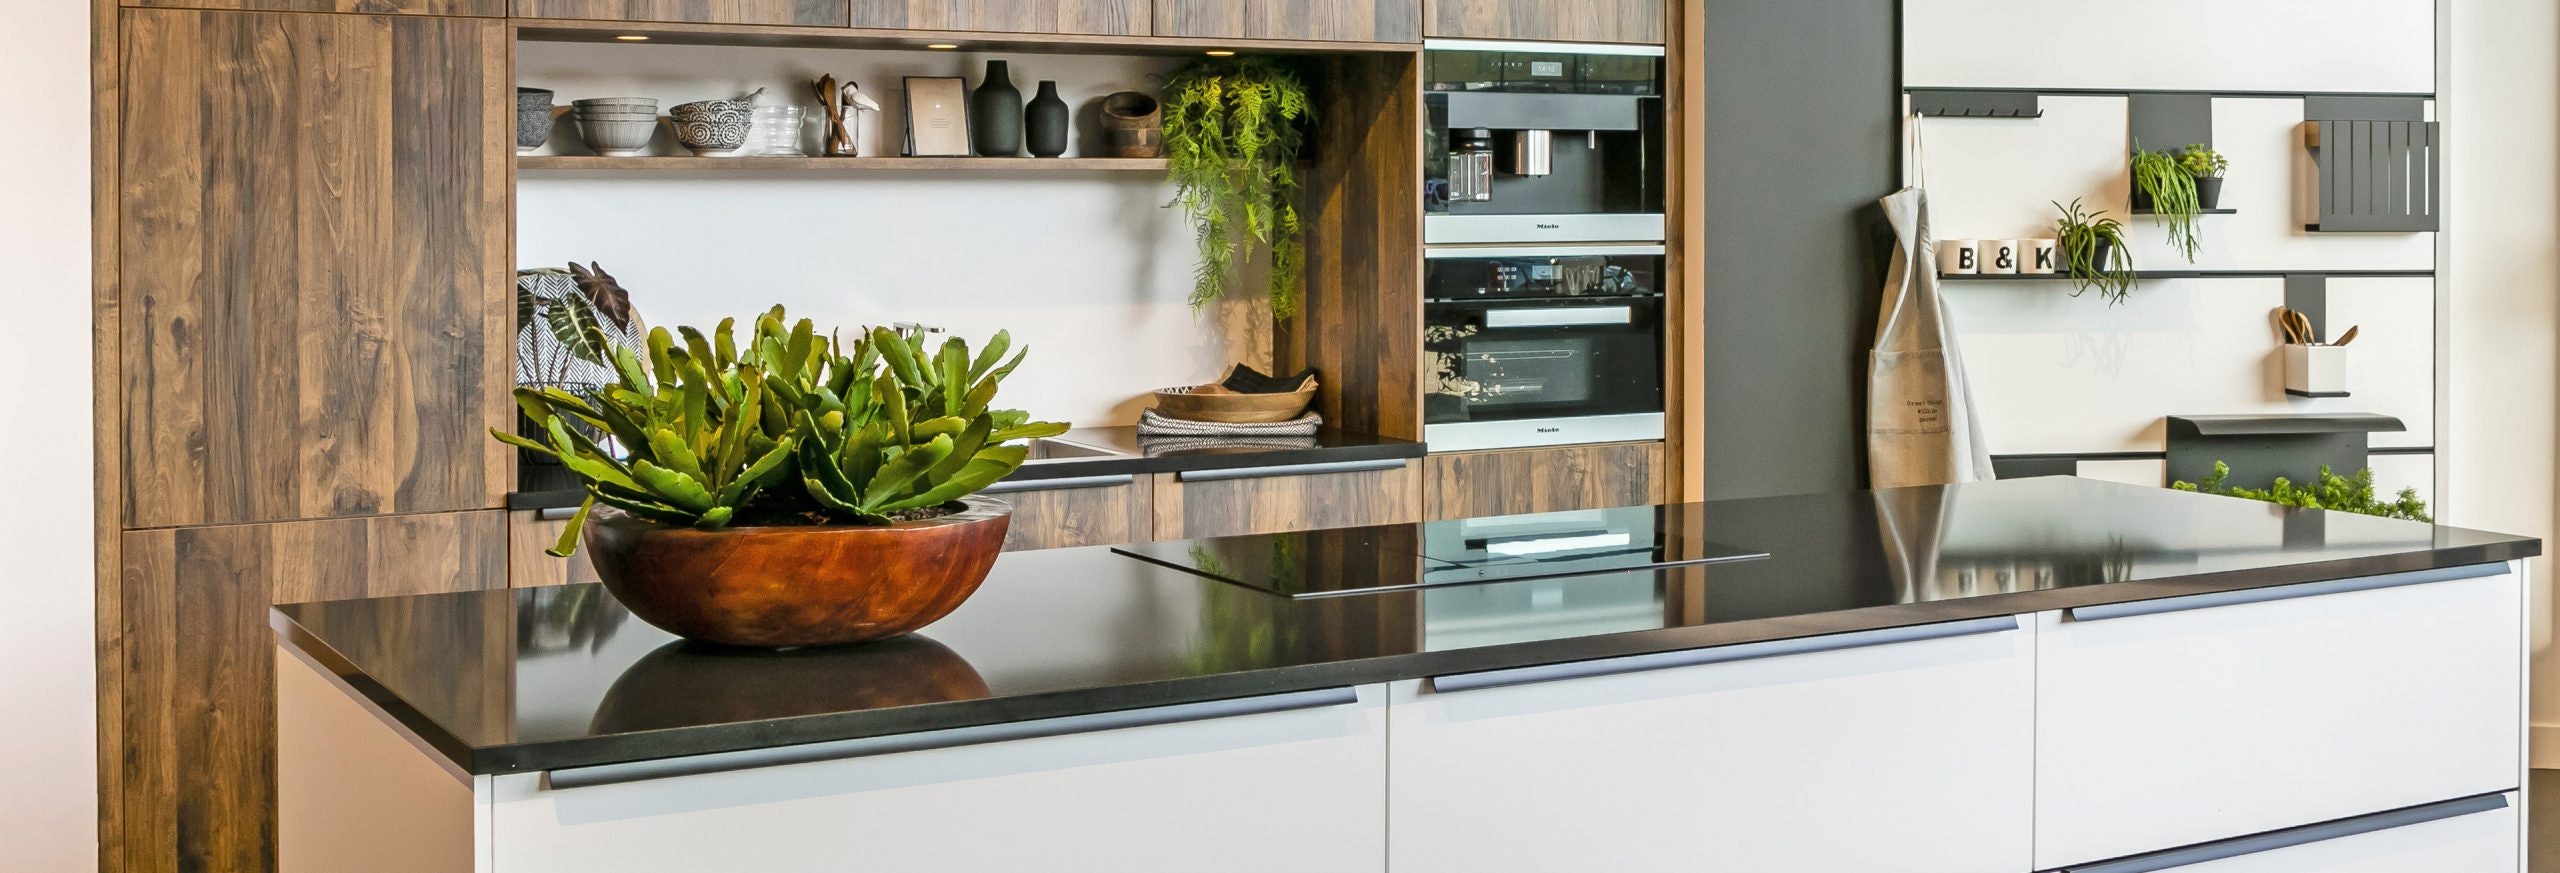 Keuken 1400202 - Design keuken met kookeiland en houten kastenwand